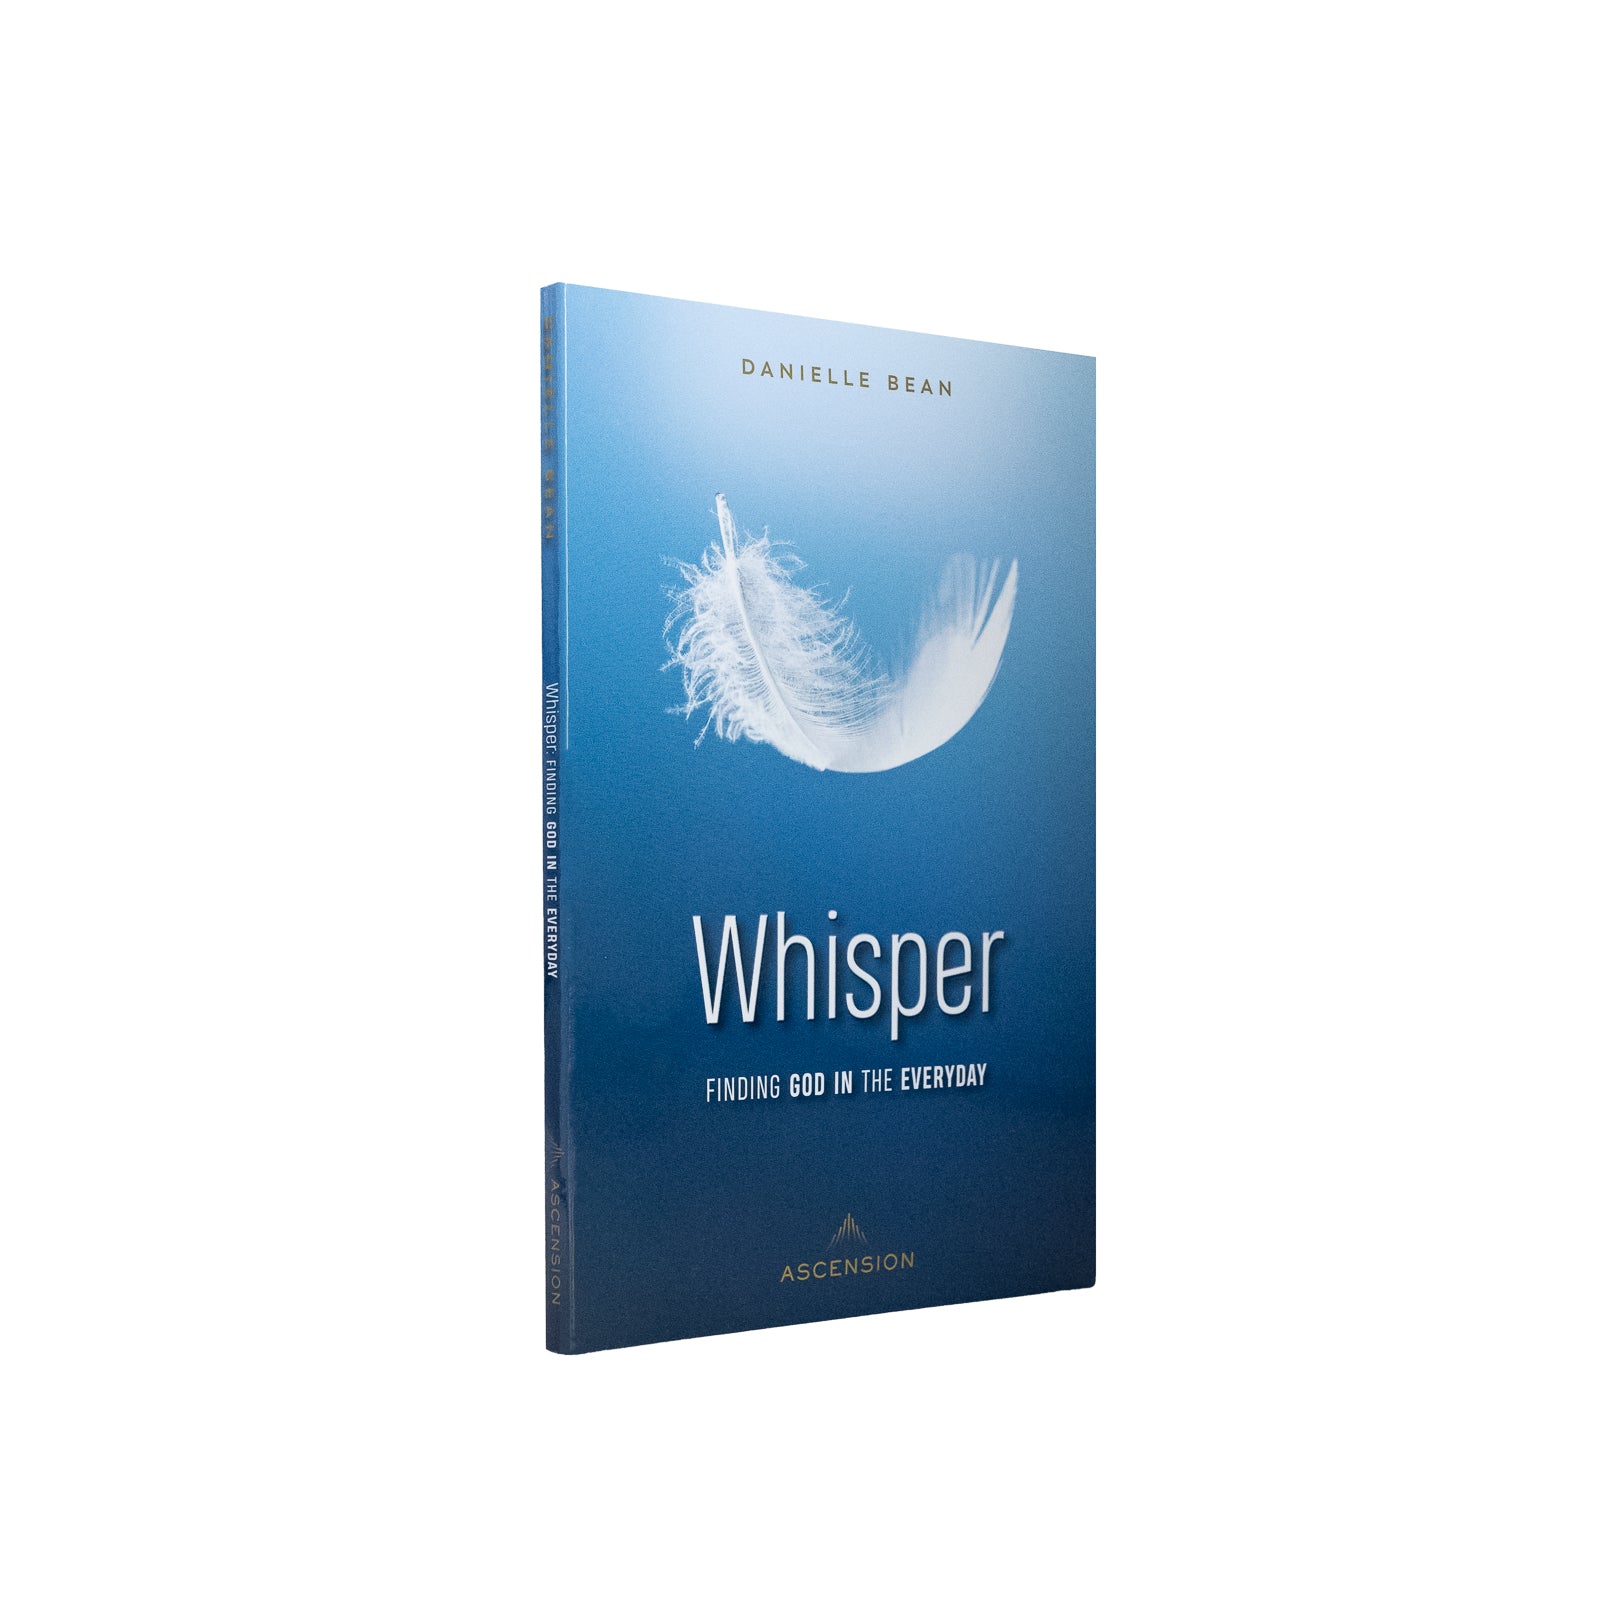 Book review of The Baseball Whisperer